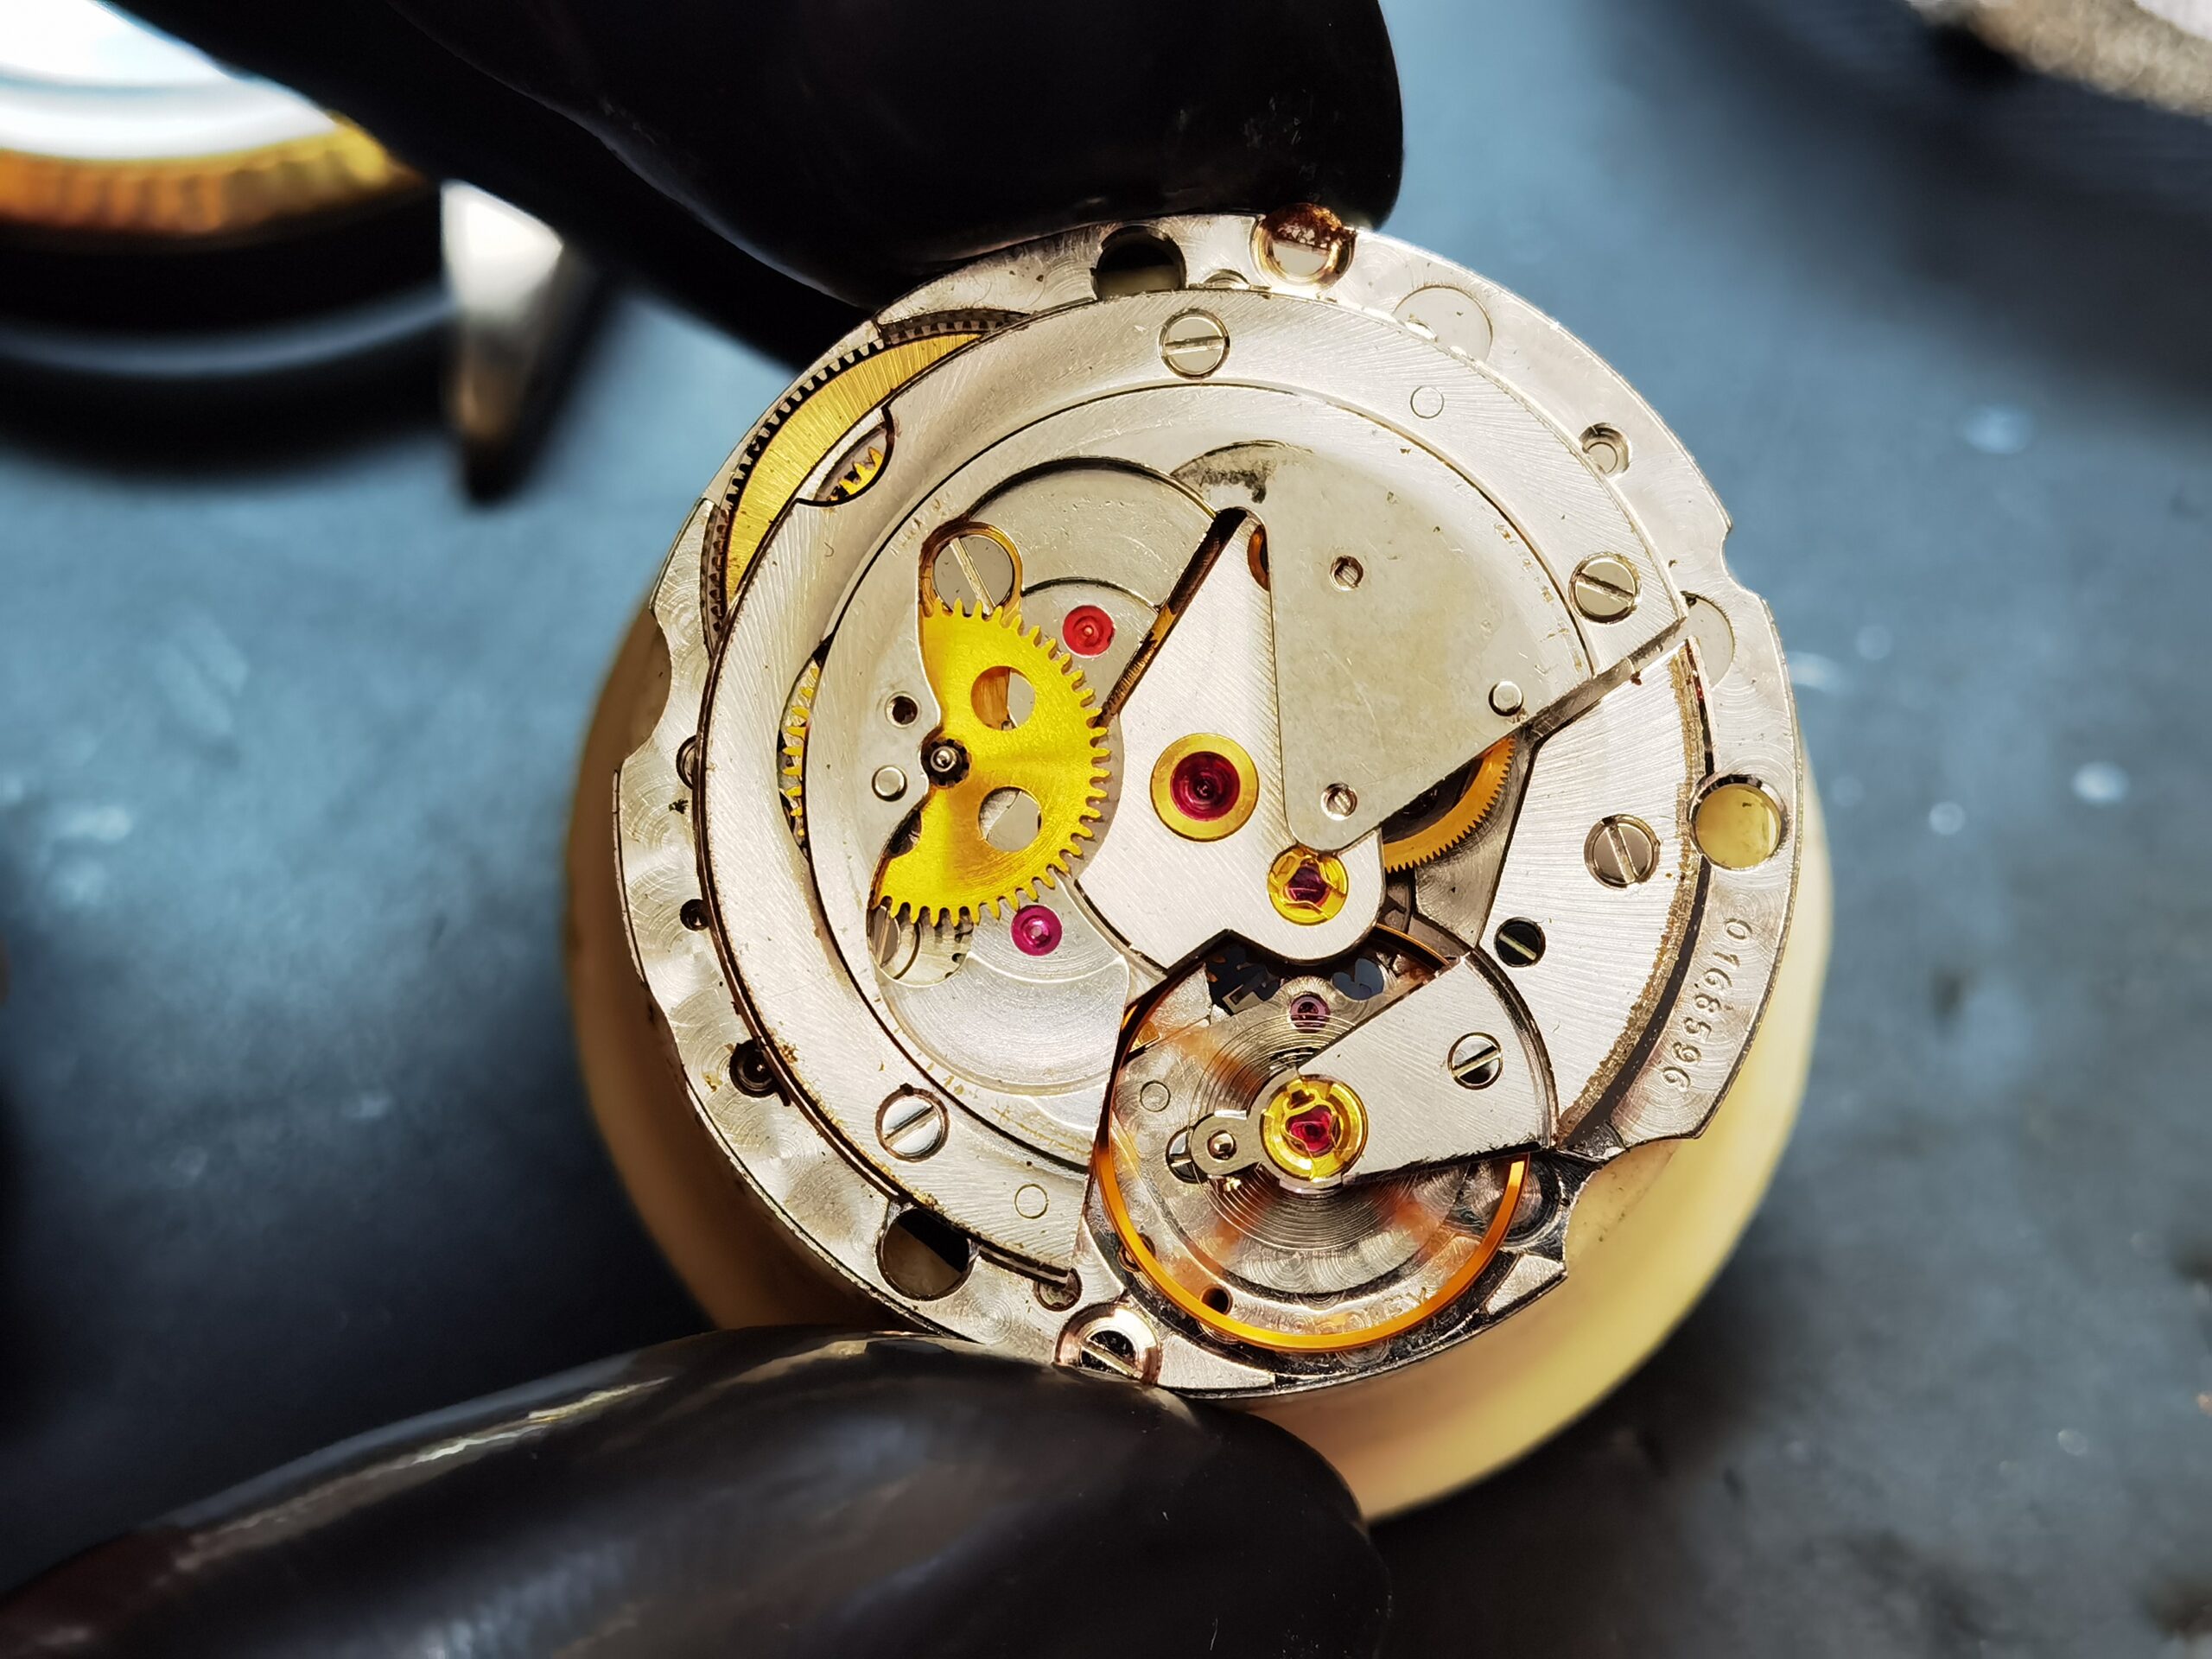 2-11mm Edelstahl Uhren zubehör Reparatur werkzeuge Uhr Kronen wickler  Stahlwerk zeug Handbuch mechanische Wicklung Demontage